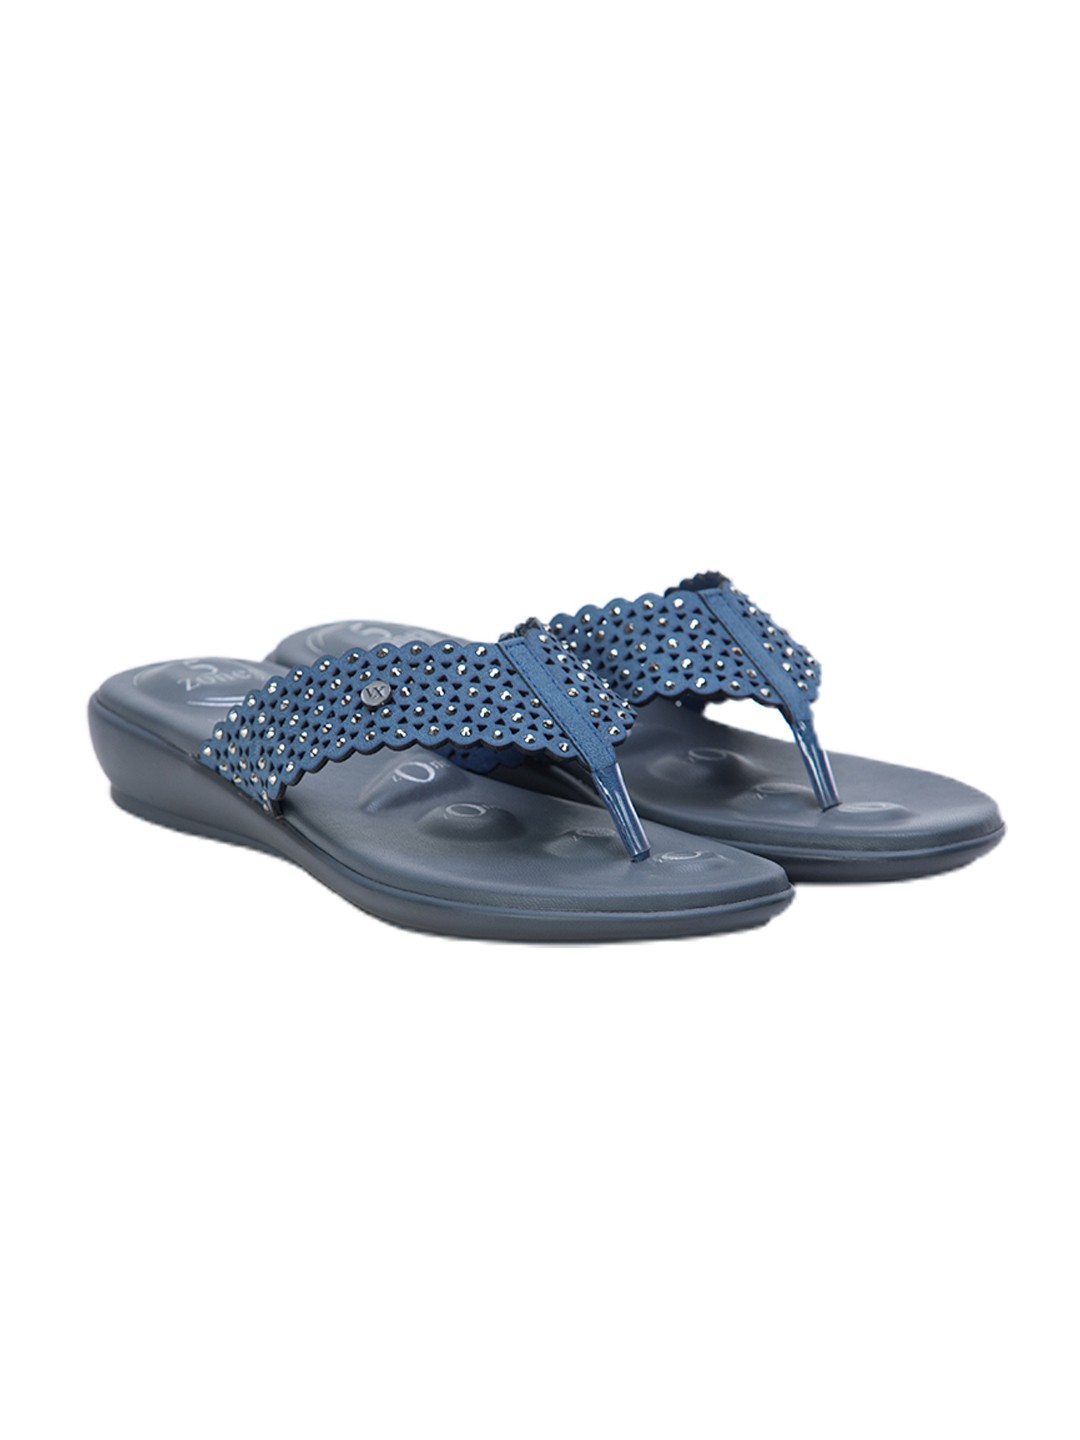 Buy Von Wellx Germany Comfort Gleam Blue Slippers Online in Indore